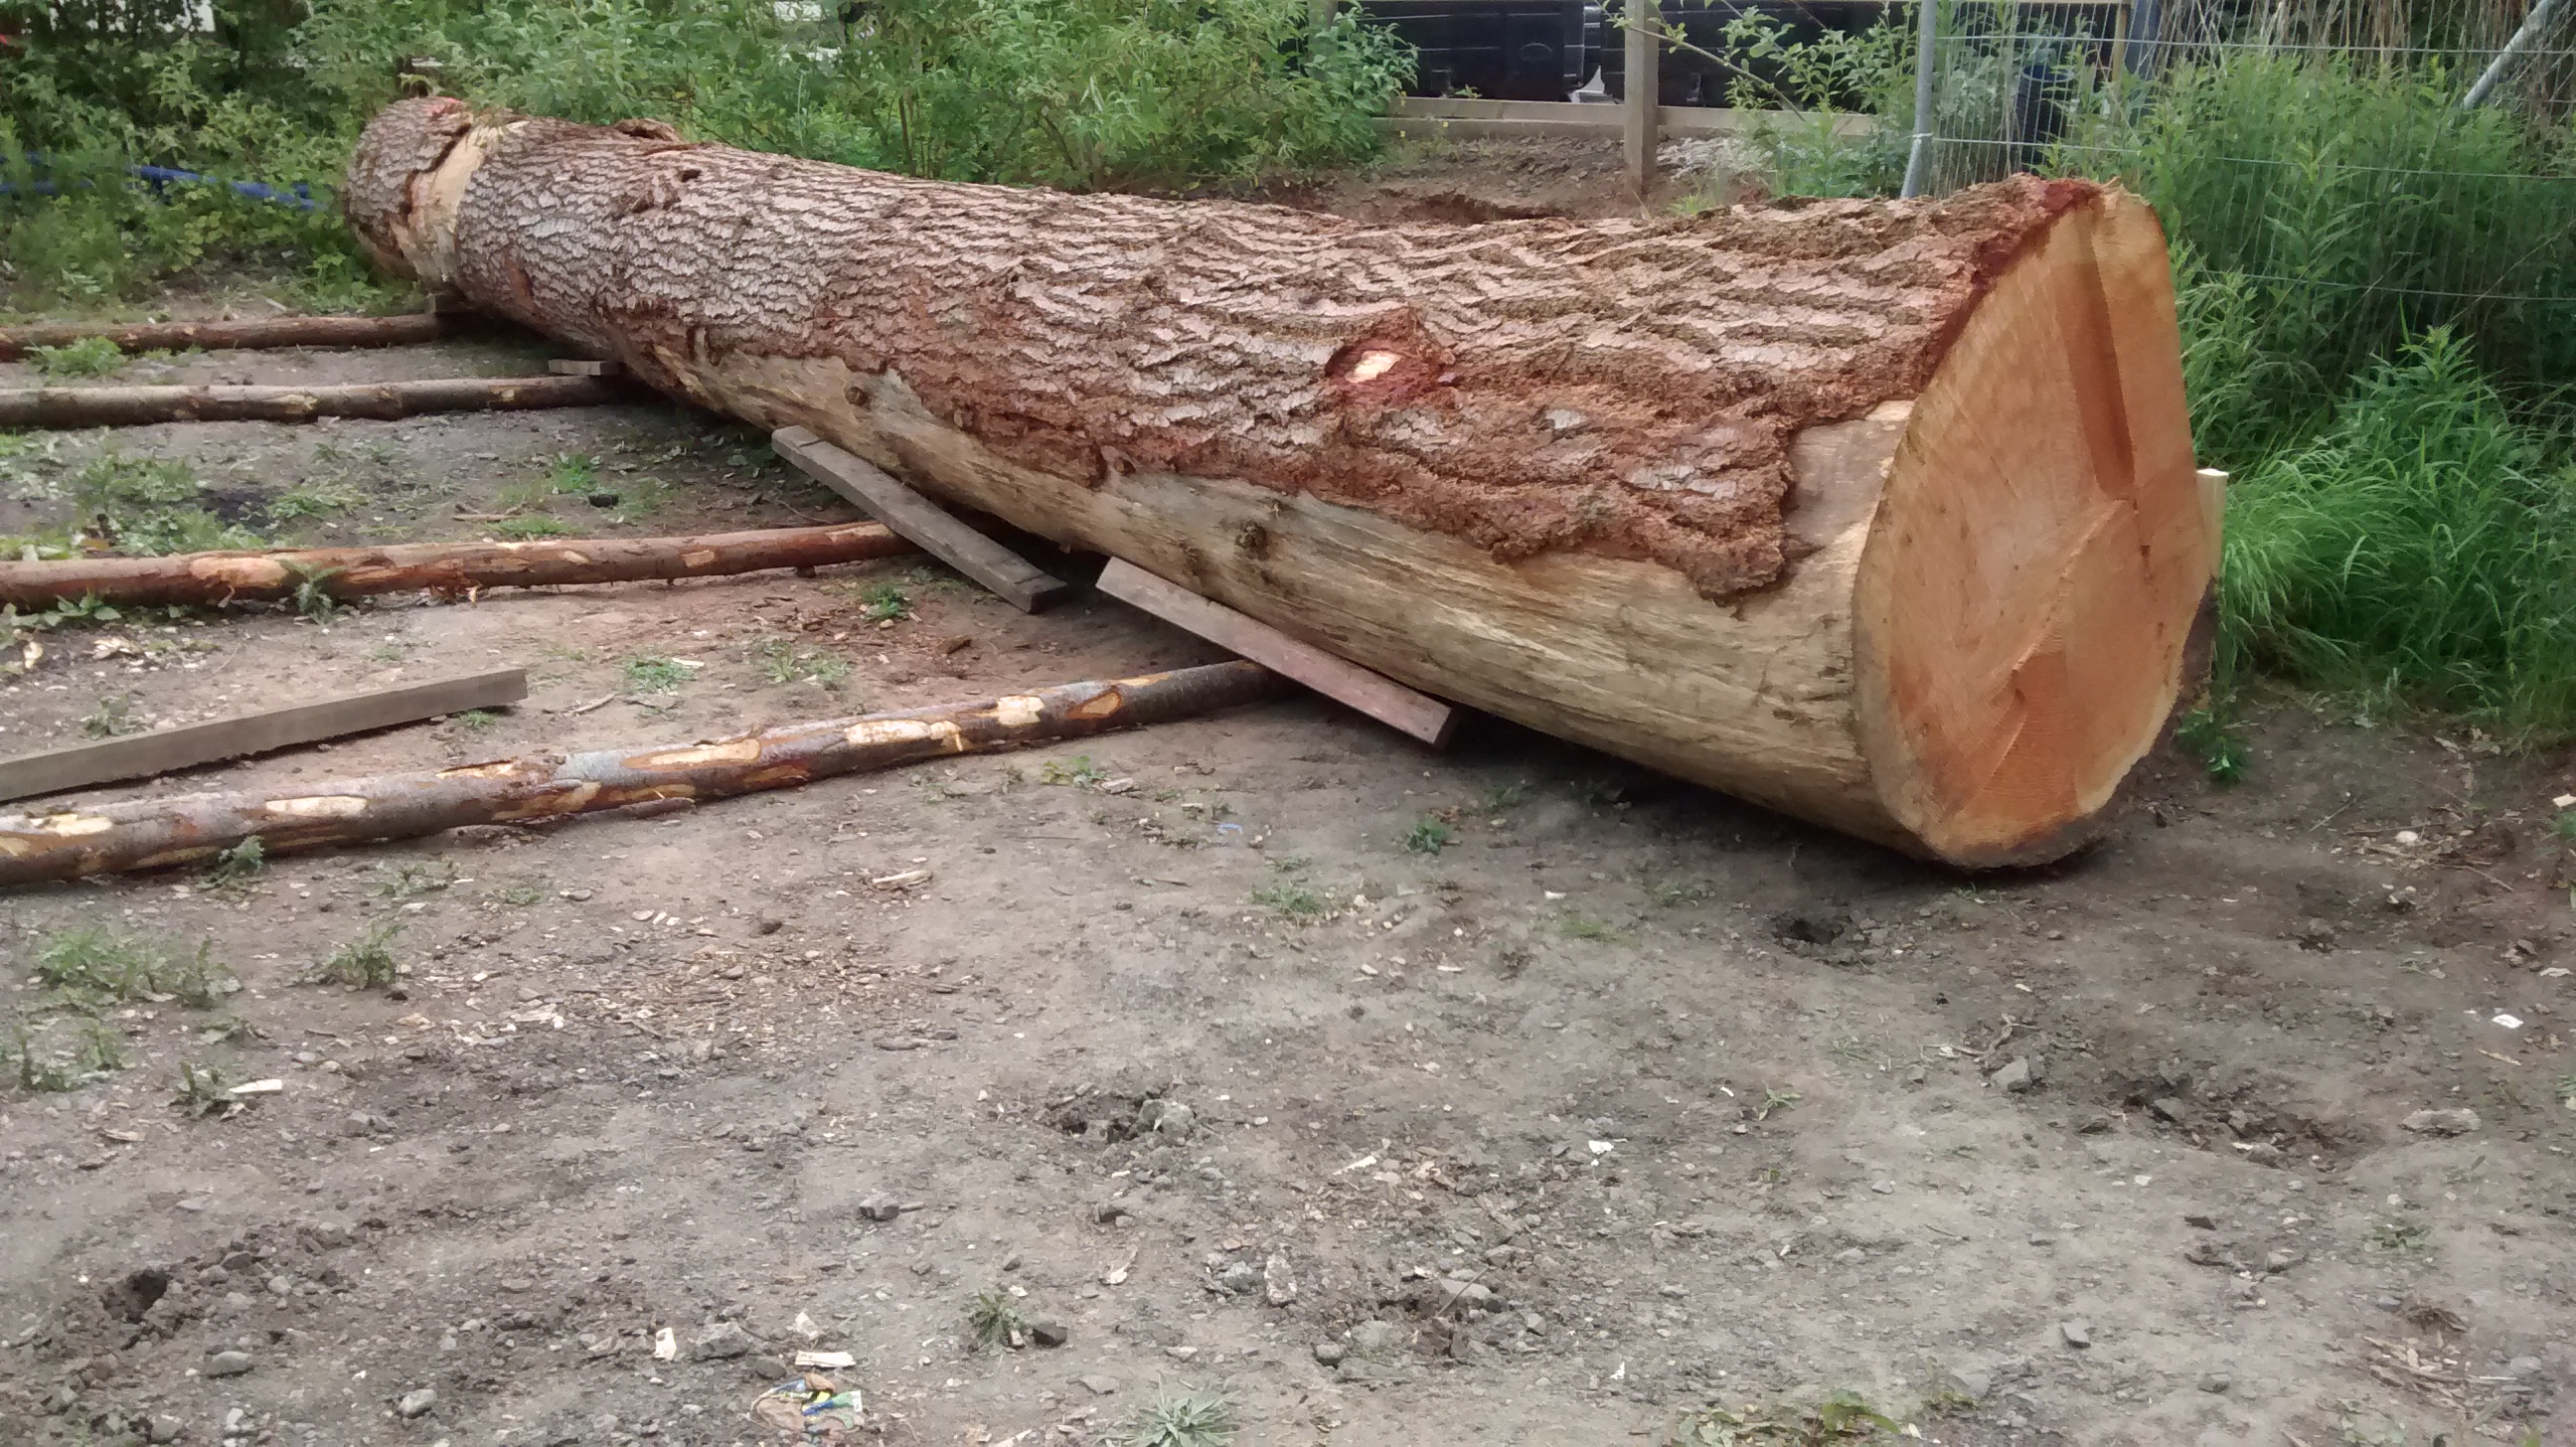 Logging in in Granton!